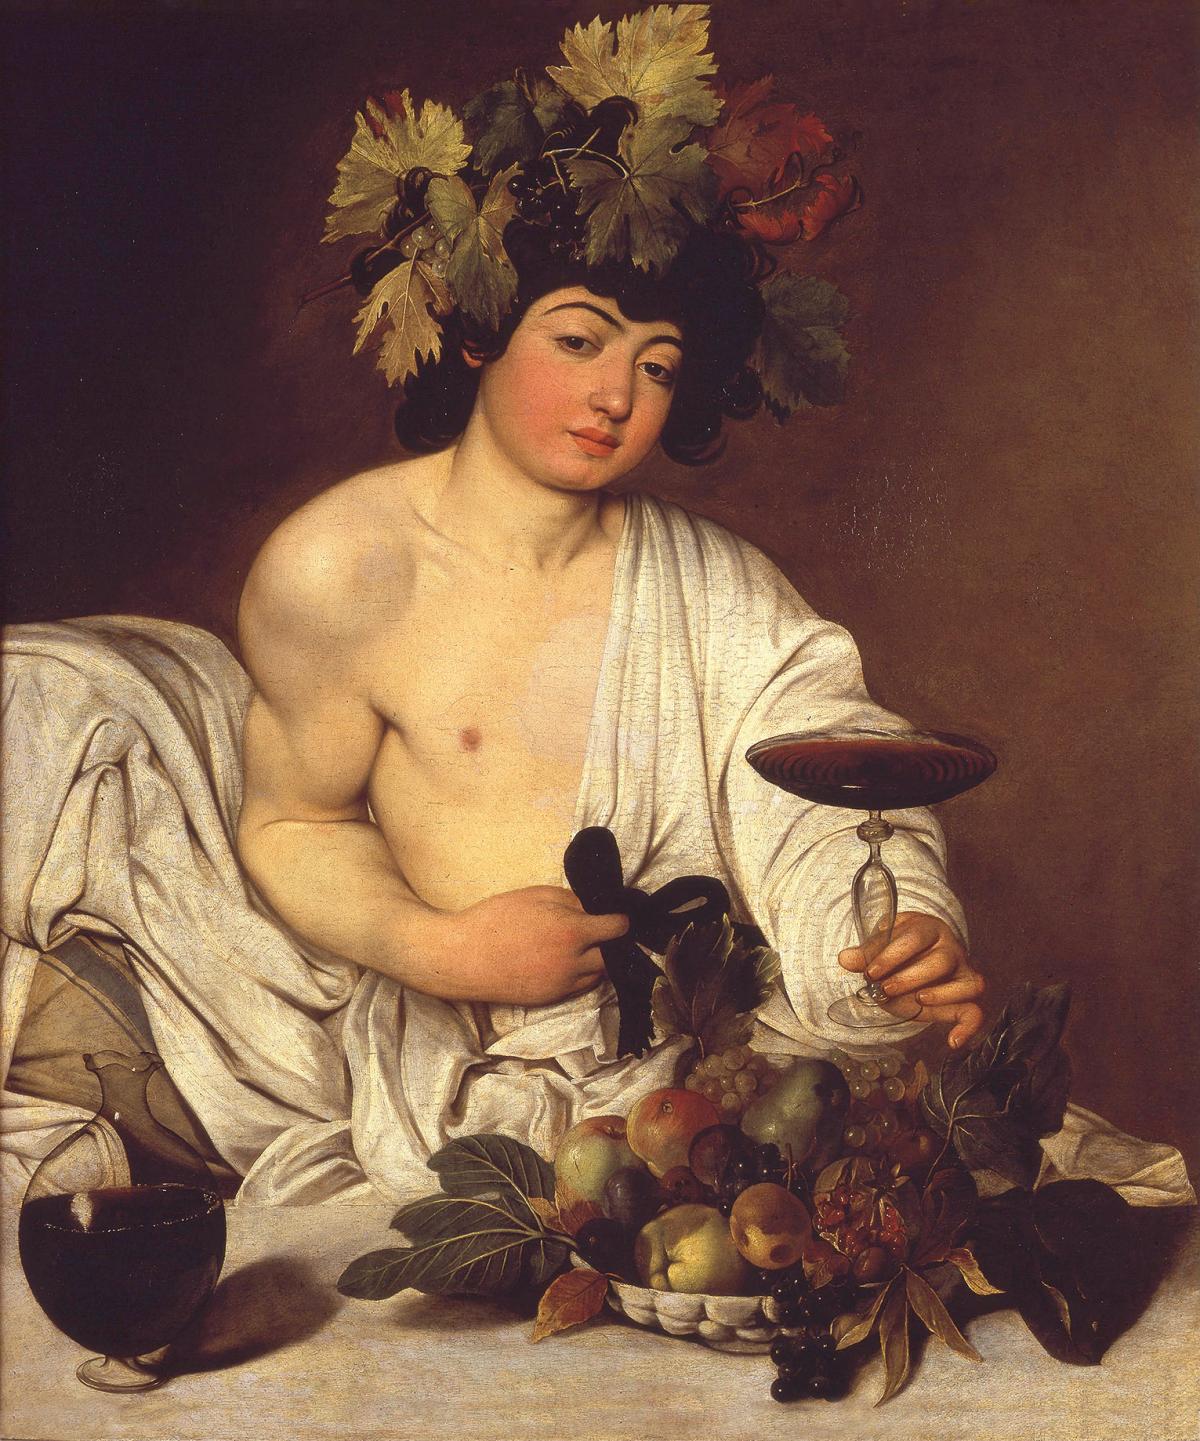 Caravaggio's Bacchus painting